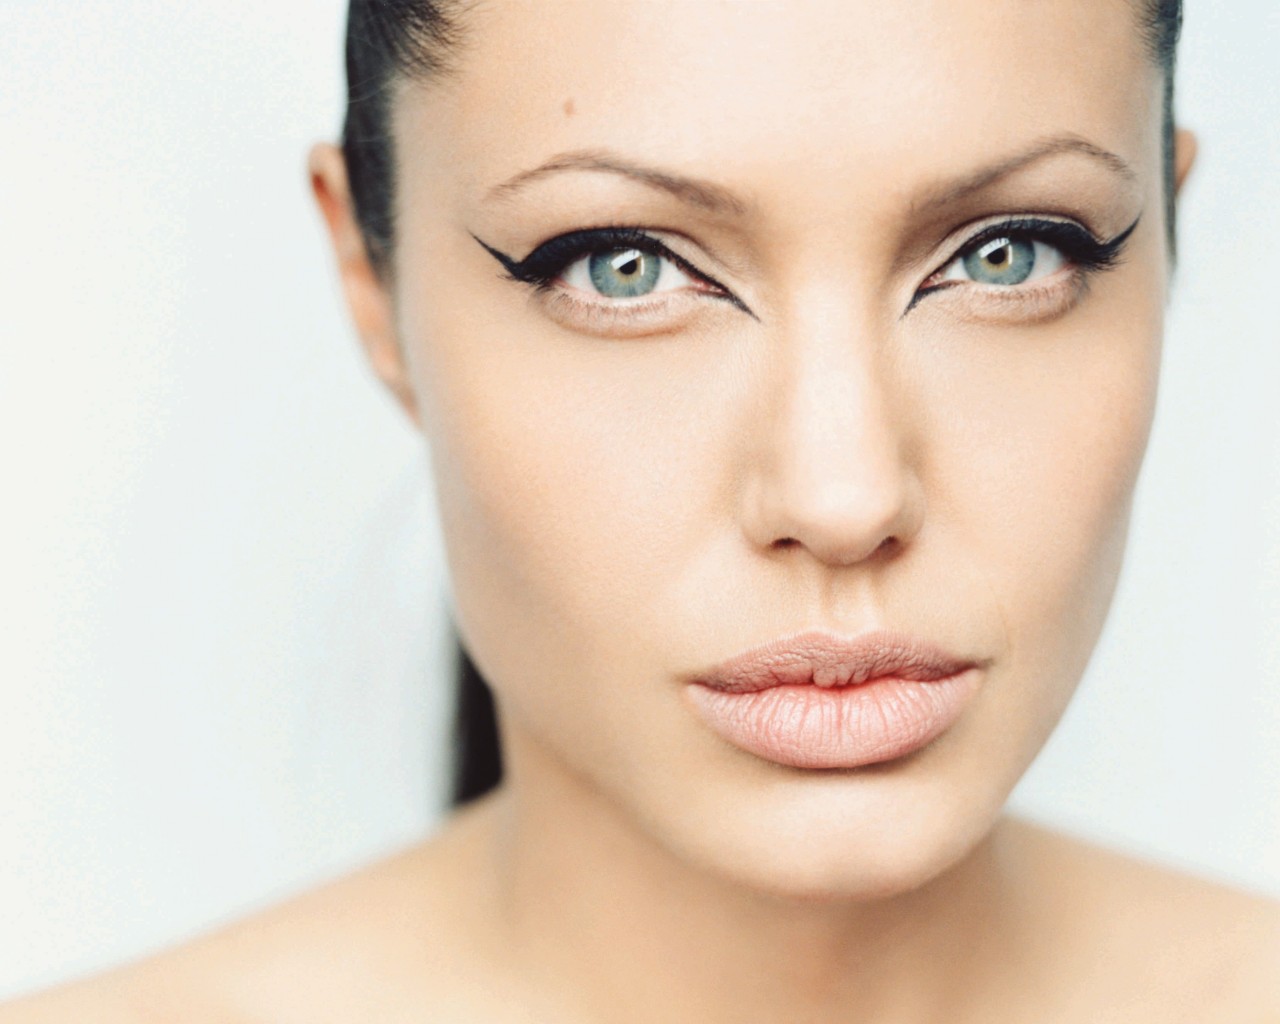 Angelina Jolie Wallpaper for Desktop 1280x1024